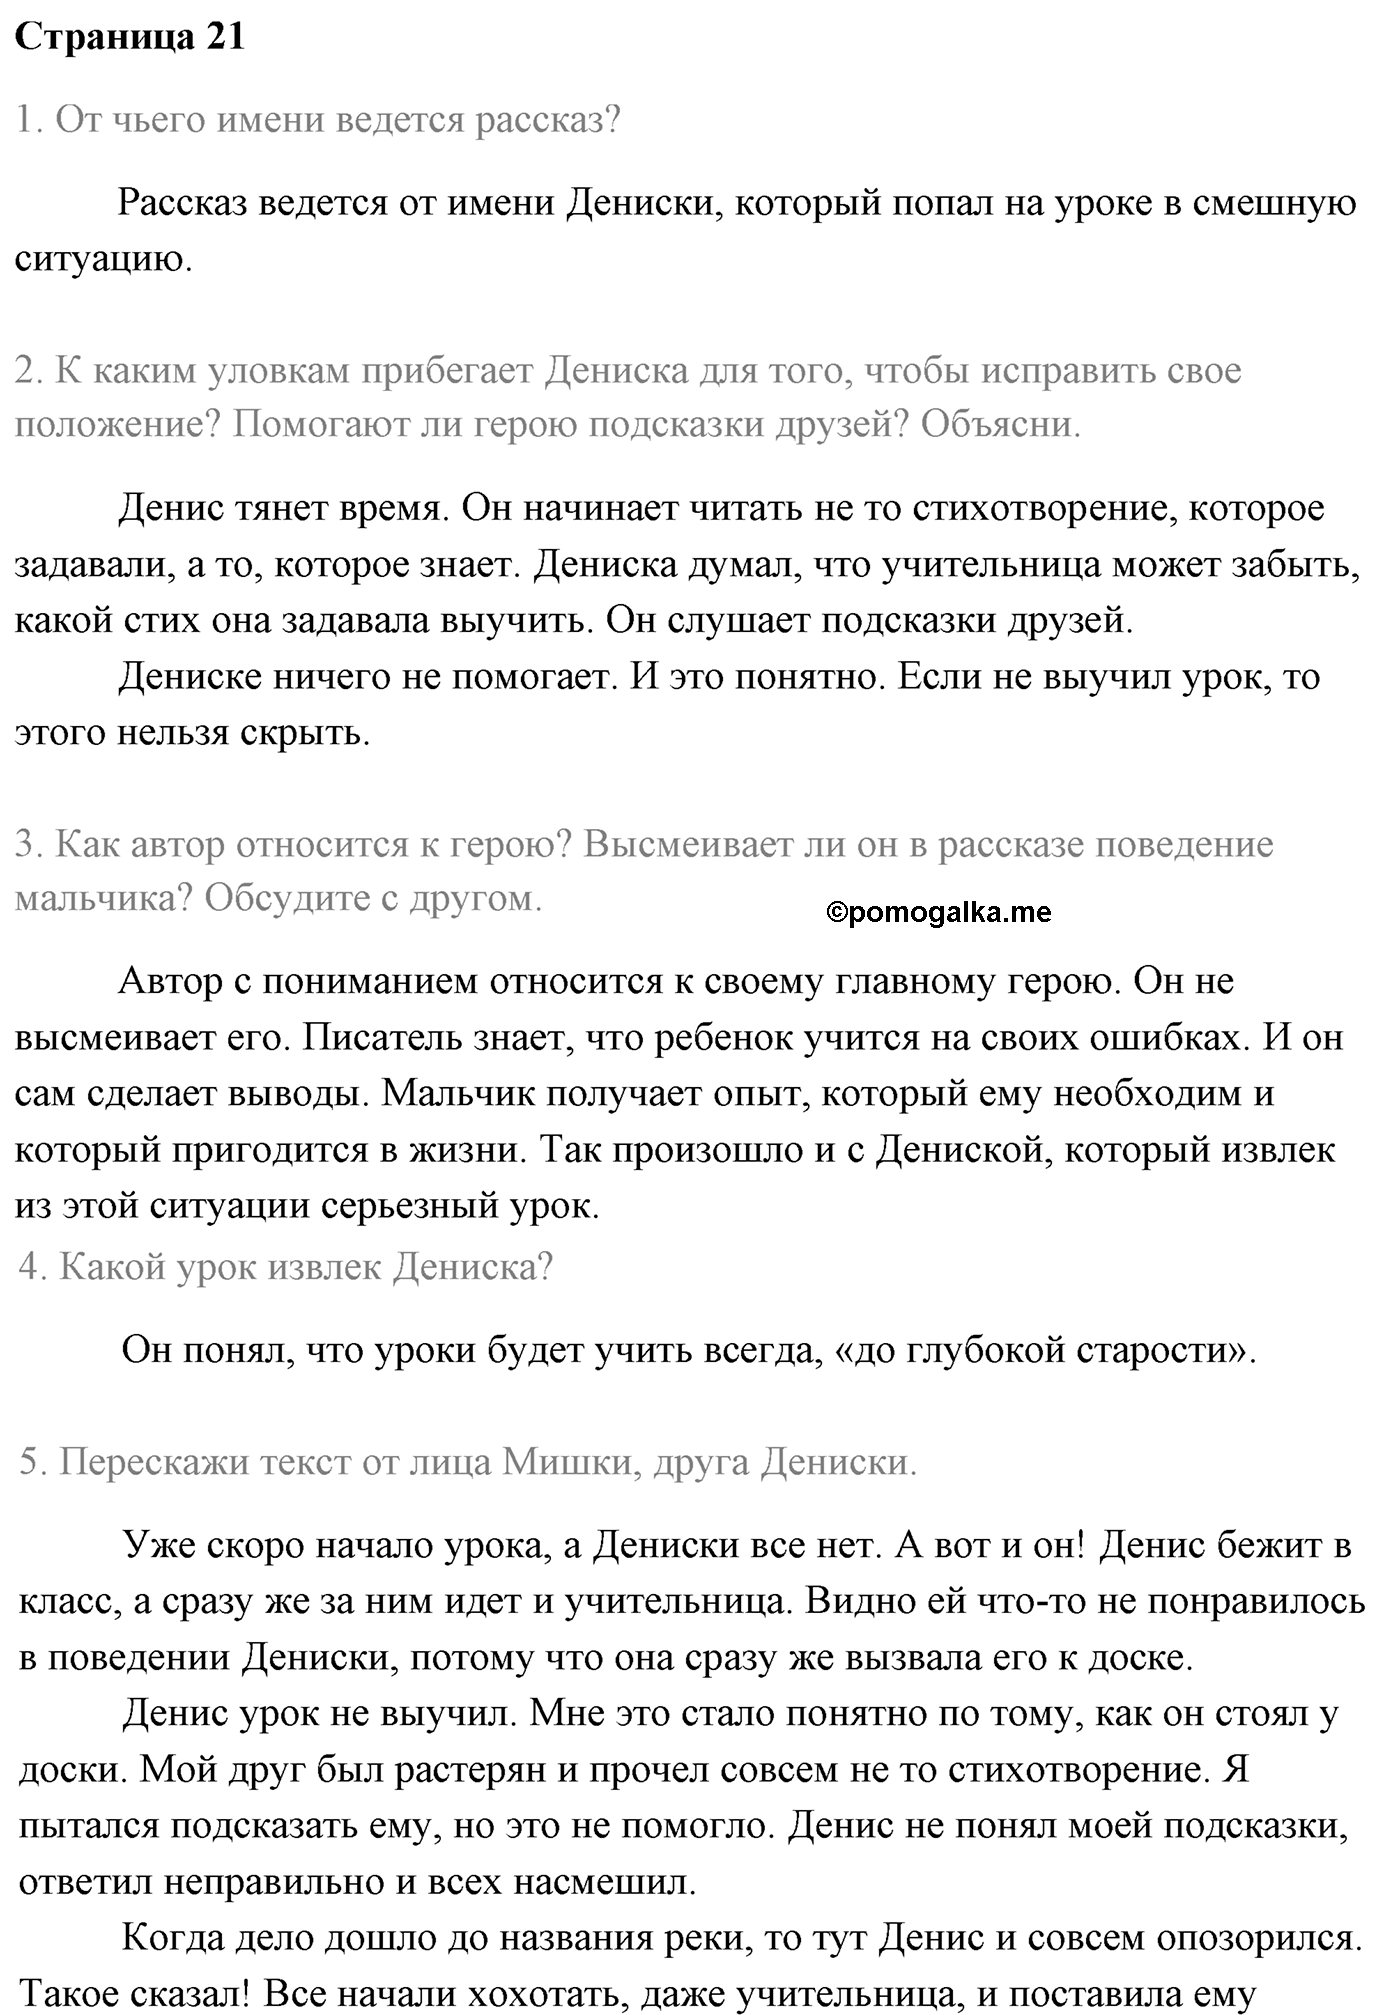 Часть 2 Страница 21 литературное чтение 4 класс Климанова, Горецкий, Голованова, Виноградская, Бойкина 2021 год